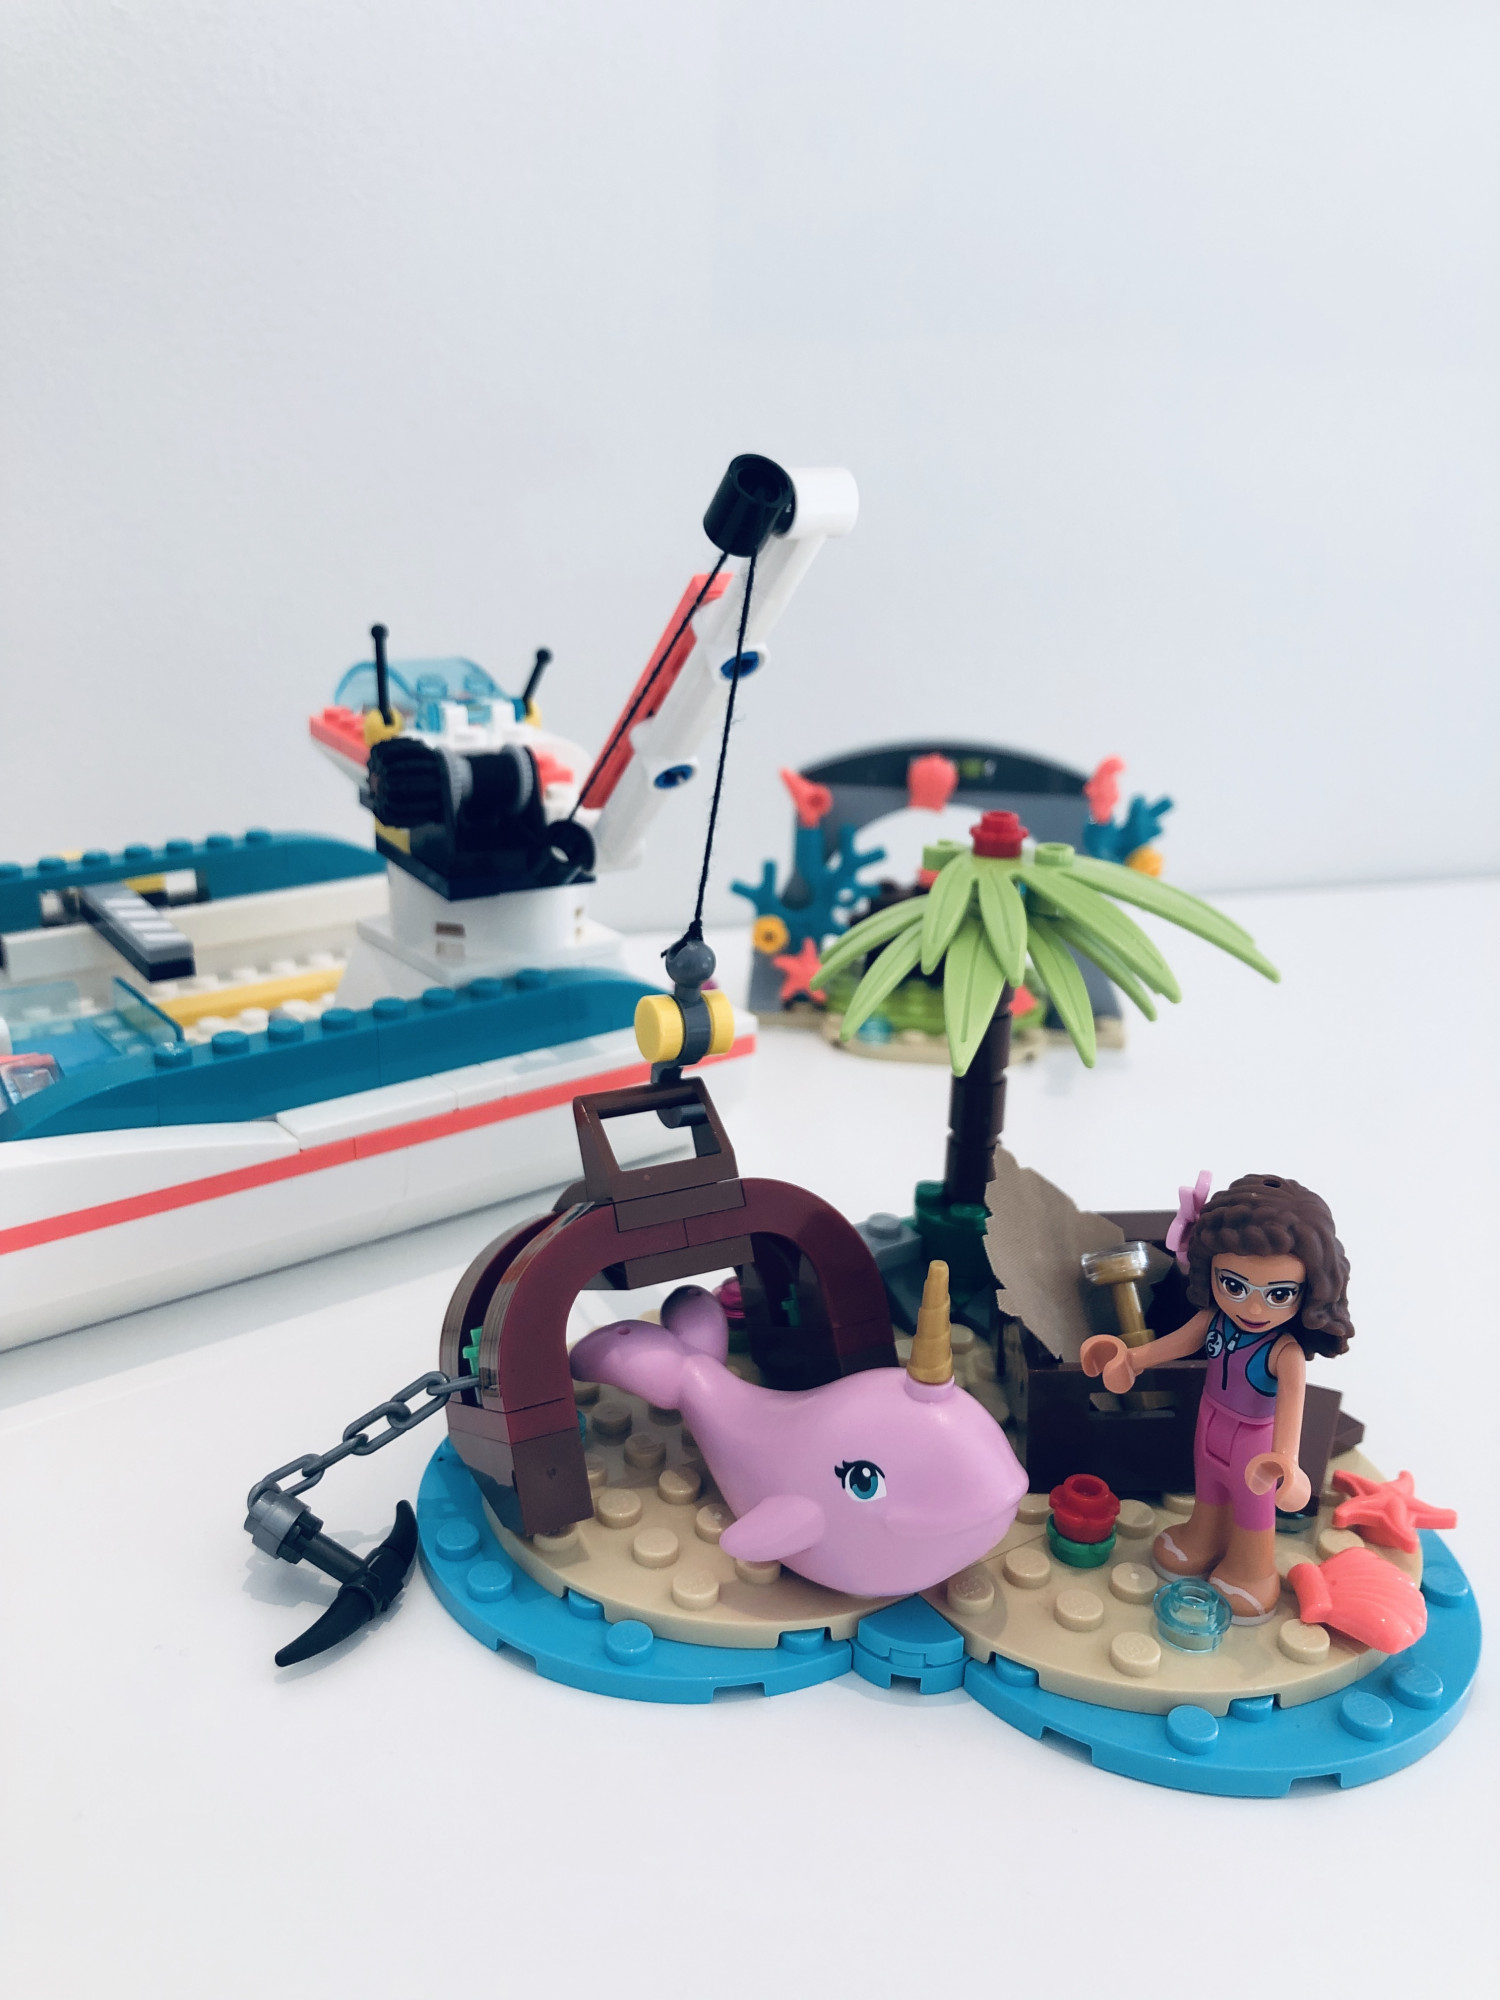 TEST LEGO Friends redningsmissionsbåd | Børn | Testfamilien